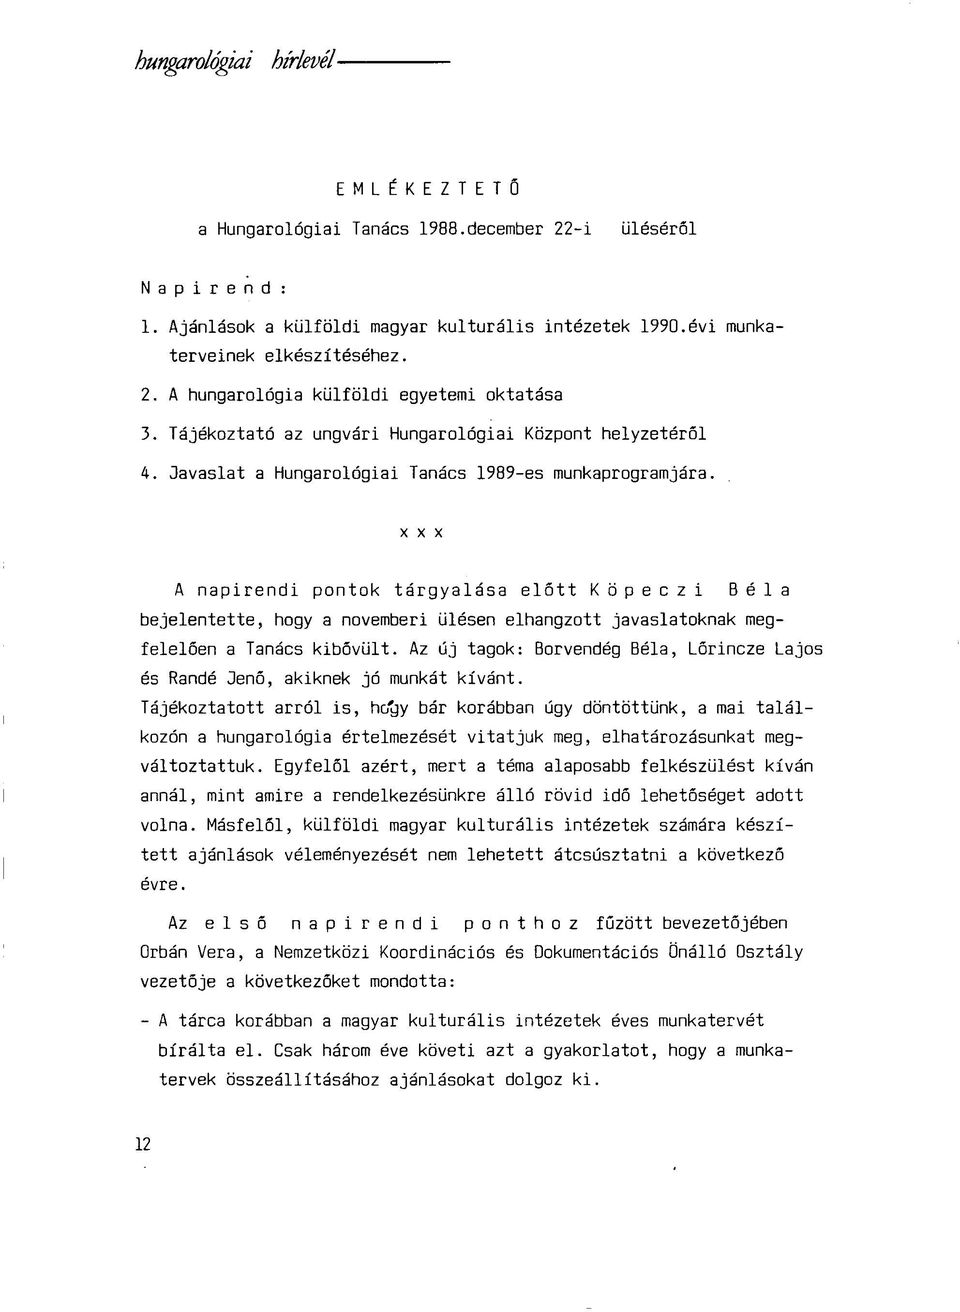 xxx A napirendi pontok tárgyalása előtt Köpeczi Béla bejelentette, hogy a novemberi ülésen elhangzott javaslatoknak megfelelően a Tanács kibővült.